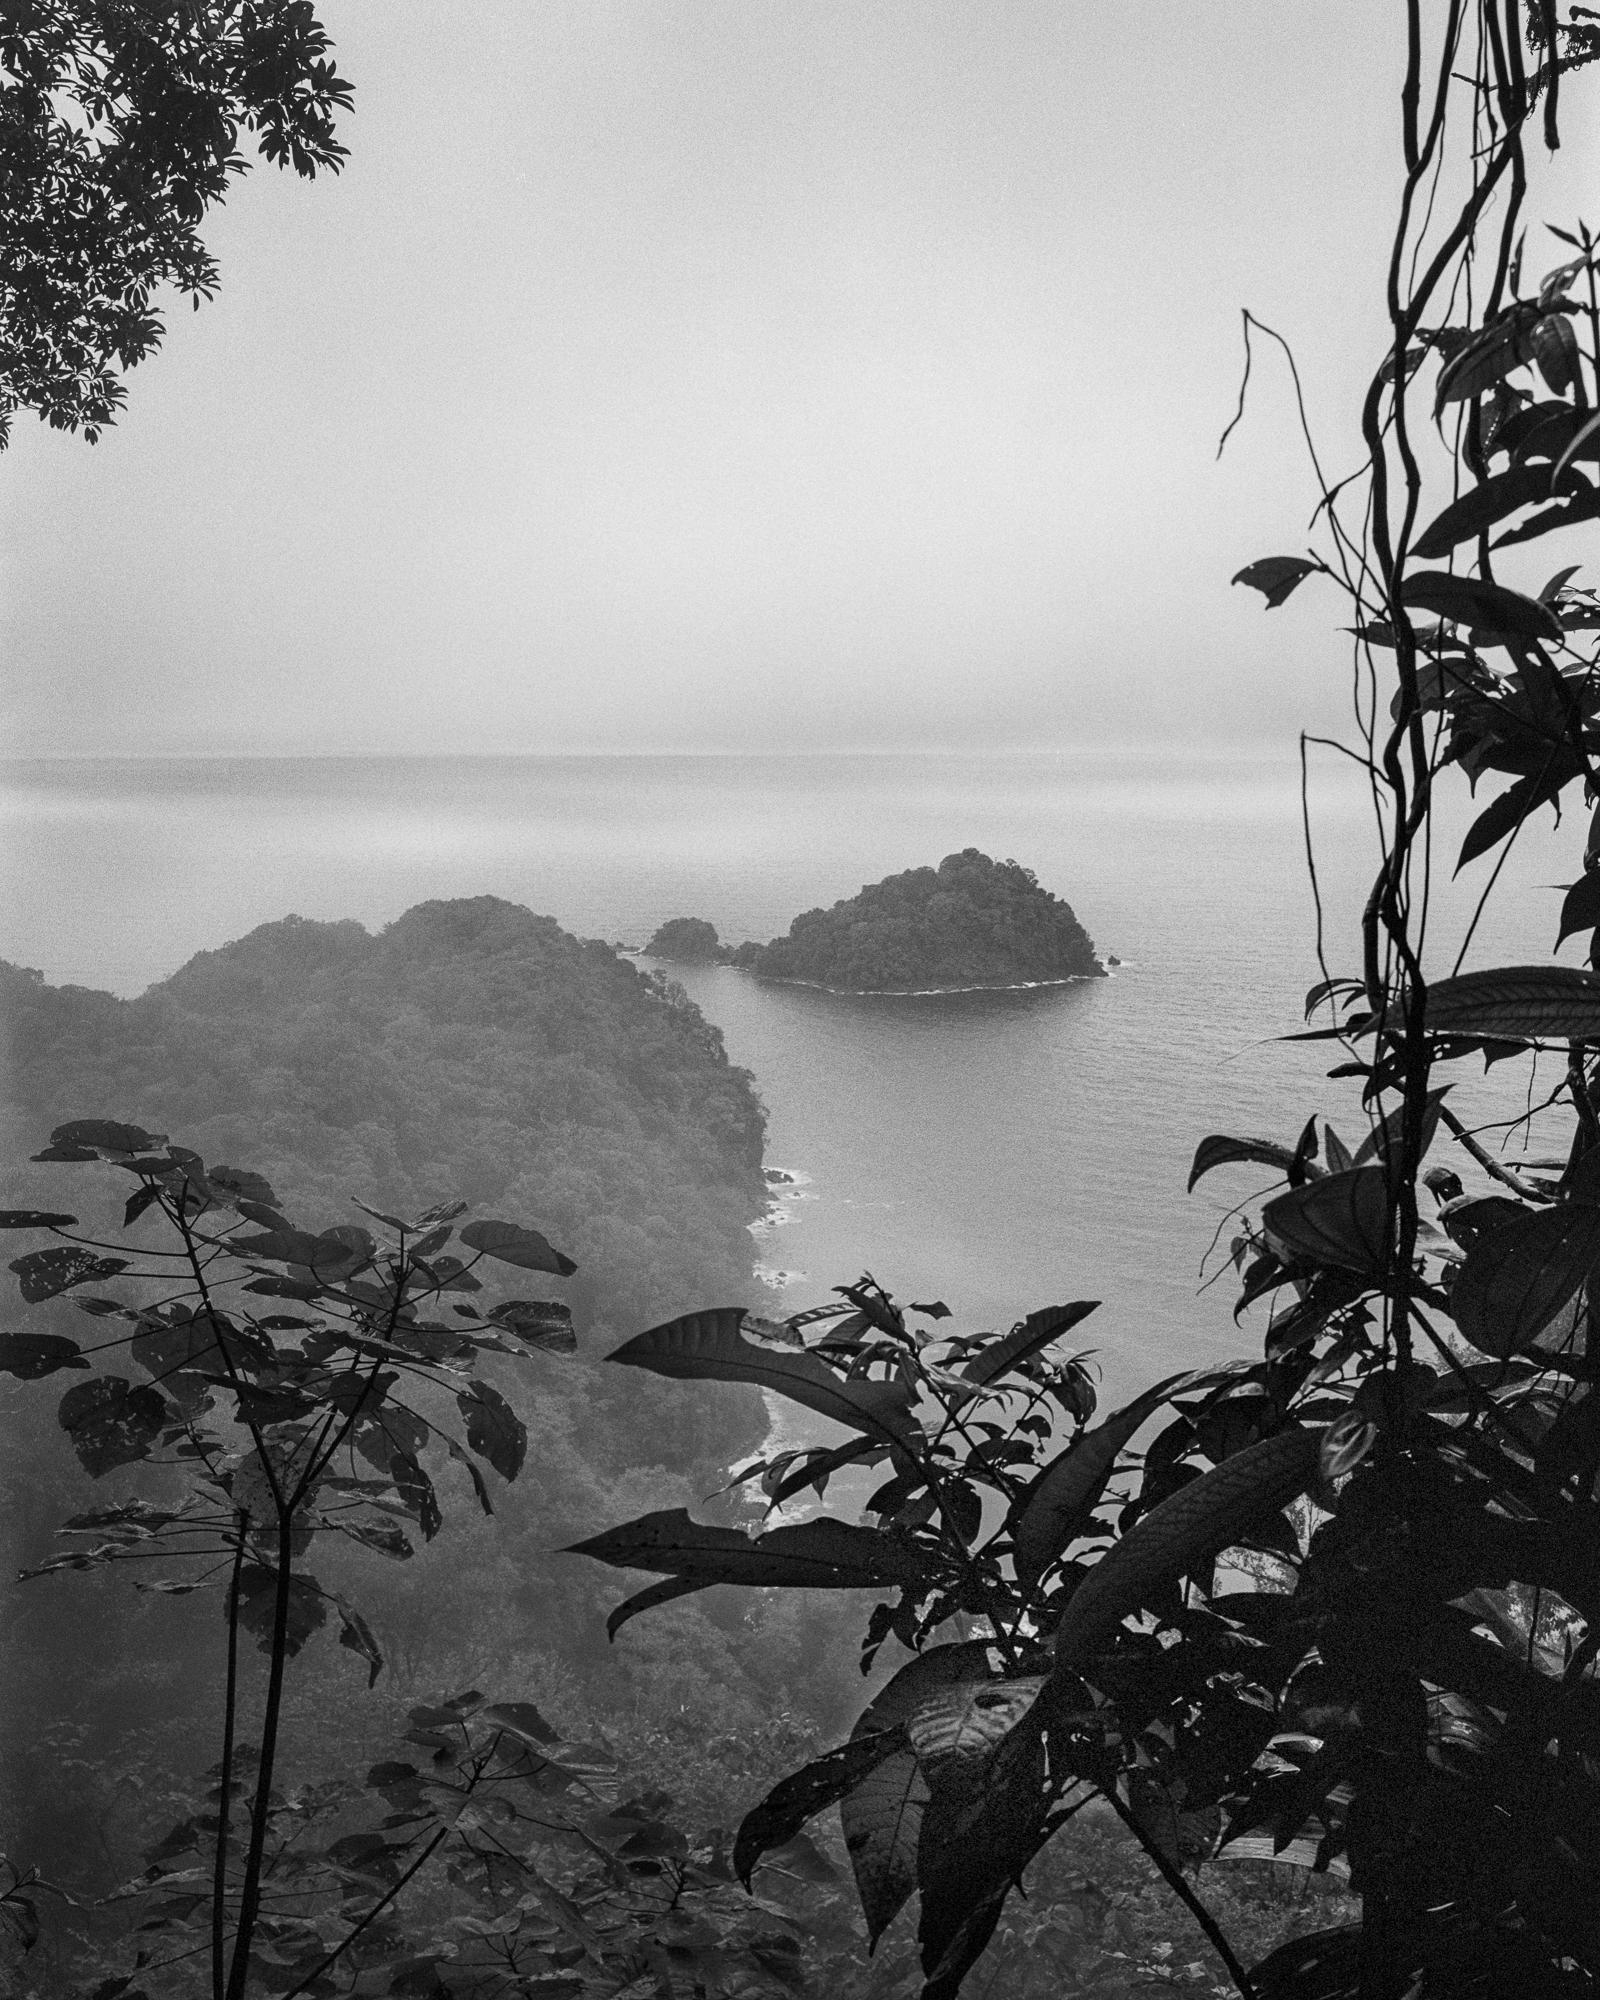 Miguel Winograd  Landscape Photograph - Bosque Húmedo Tropical III Nuquí, Silver Gelatin Print